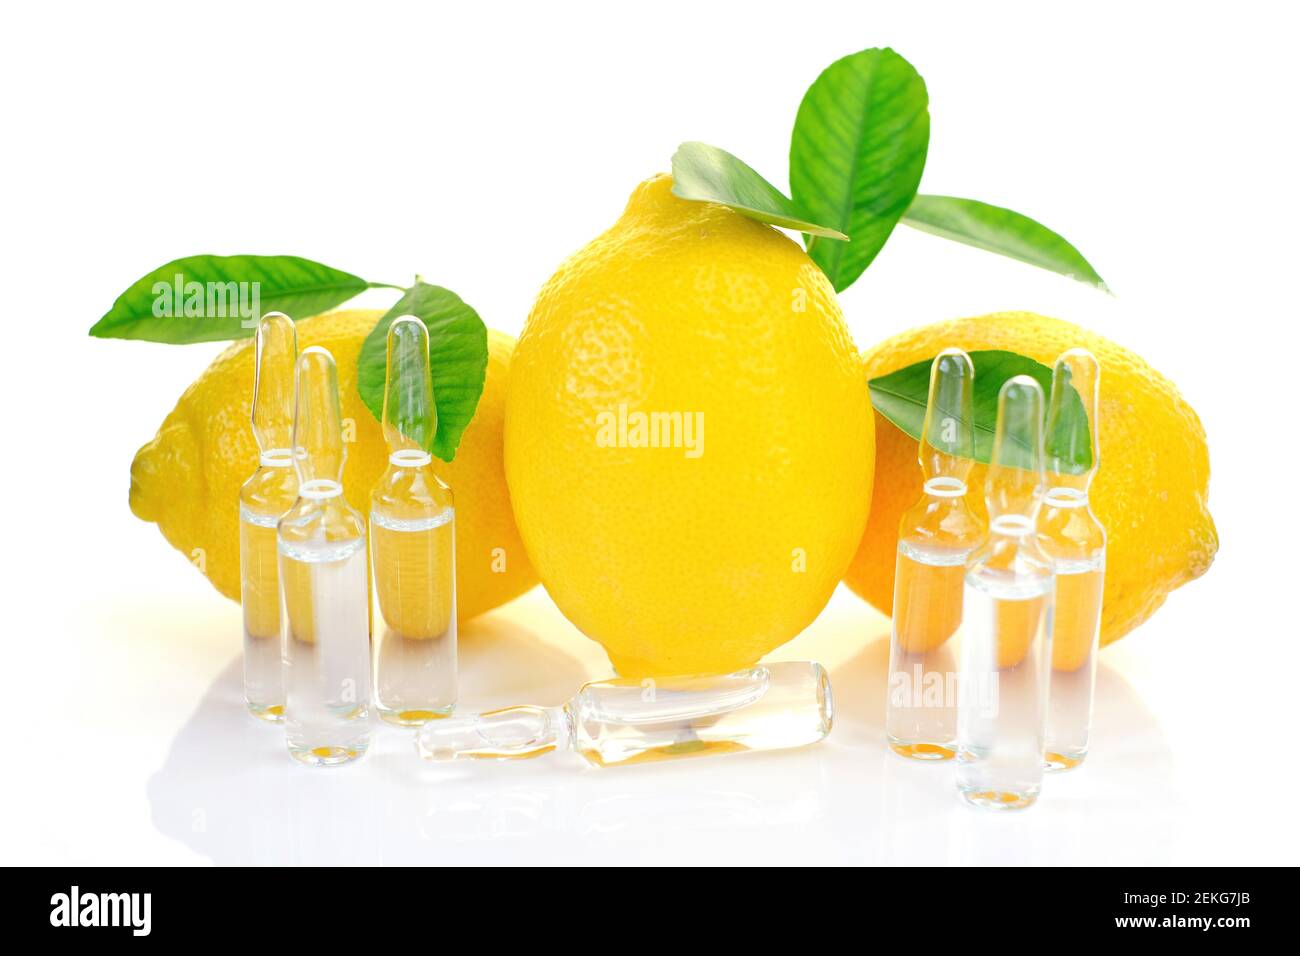 Vitamina C. prevenzione dell'immunità da virus. Siero con vitamina C. Set di fiale trasparenti, limoni frutti con foglie verdi su sfondo bianco Foto Stock